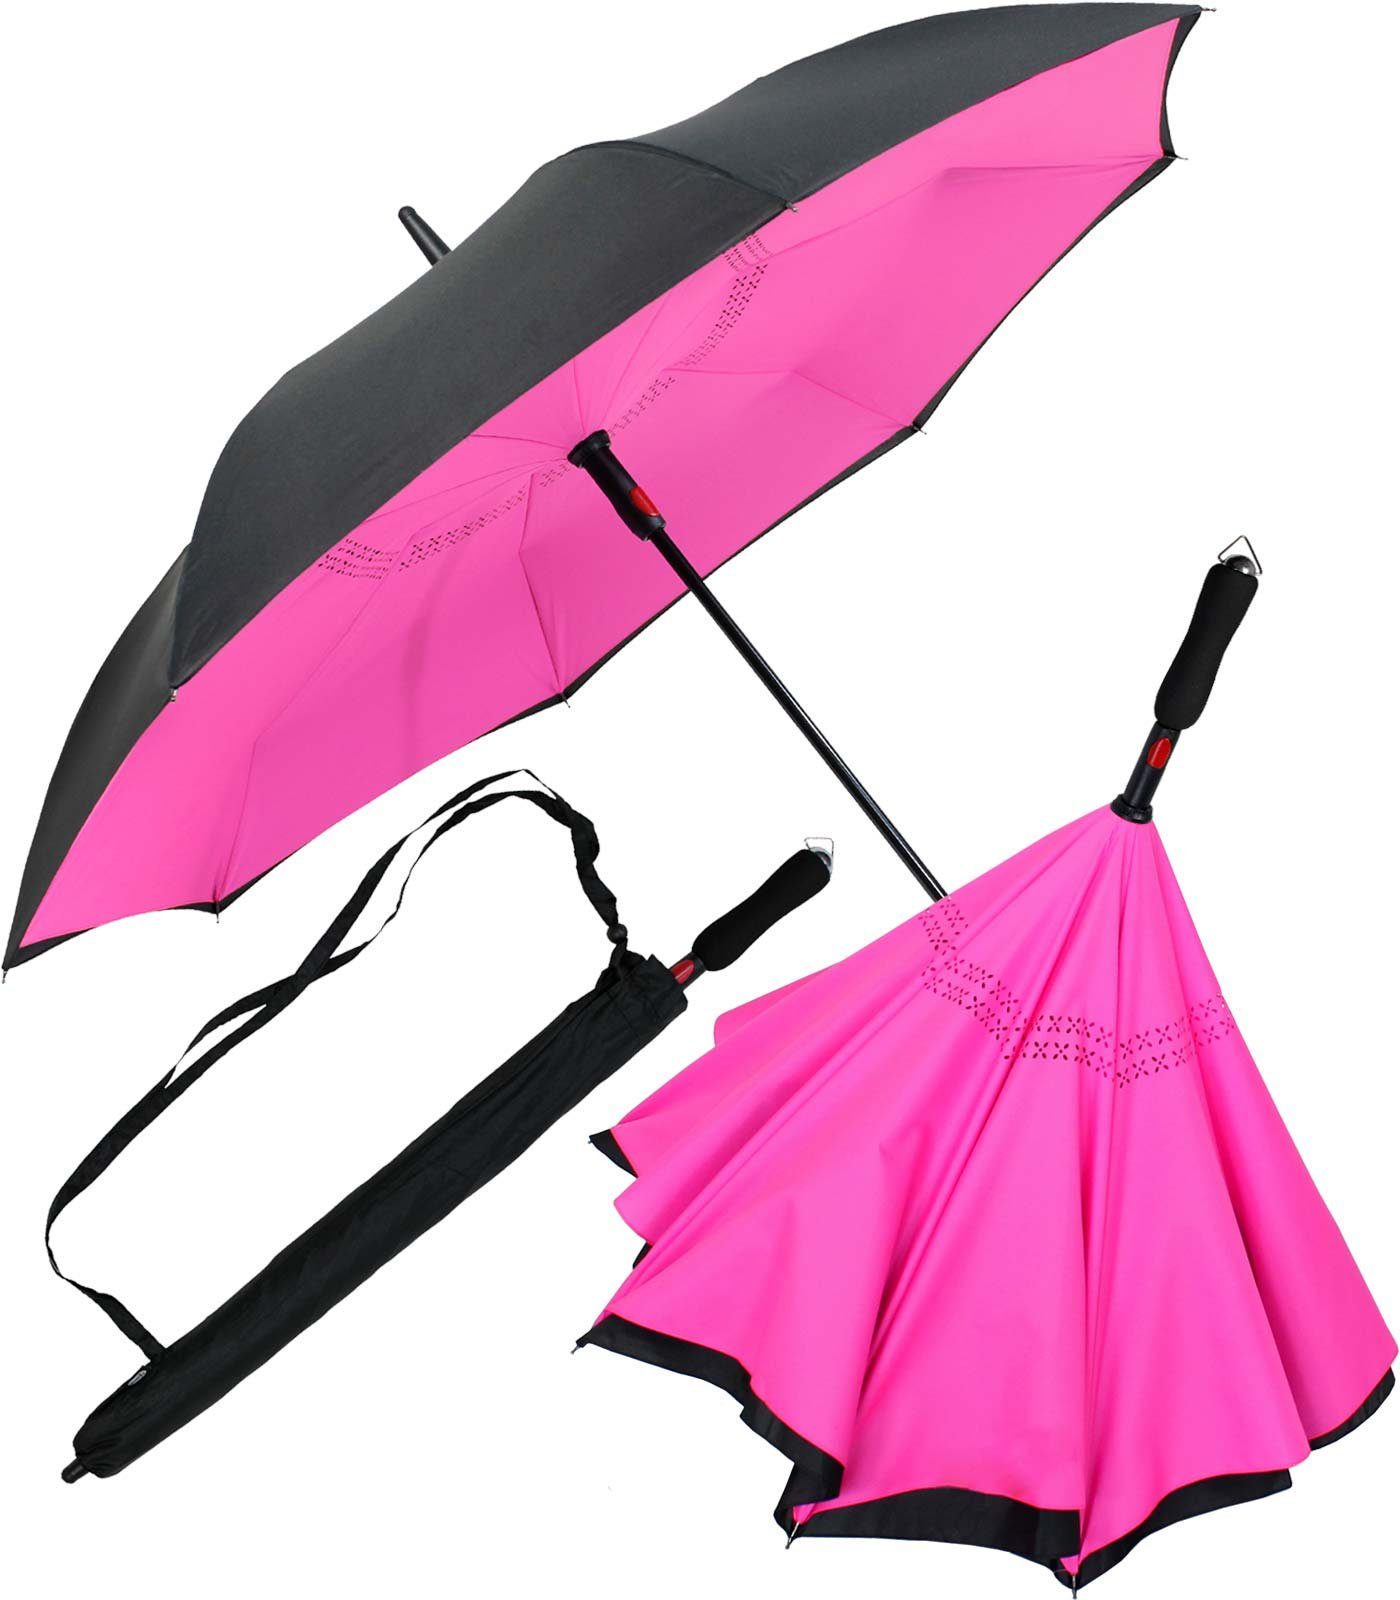 am beliebtesten iX-brella Langregenschirm Reverse-Schirm - schwarz-neon-pink mit zu umgedreht öffnen Automatik, umgedreht